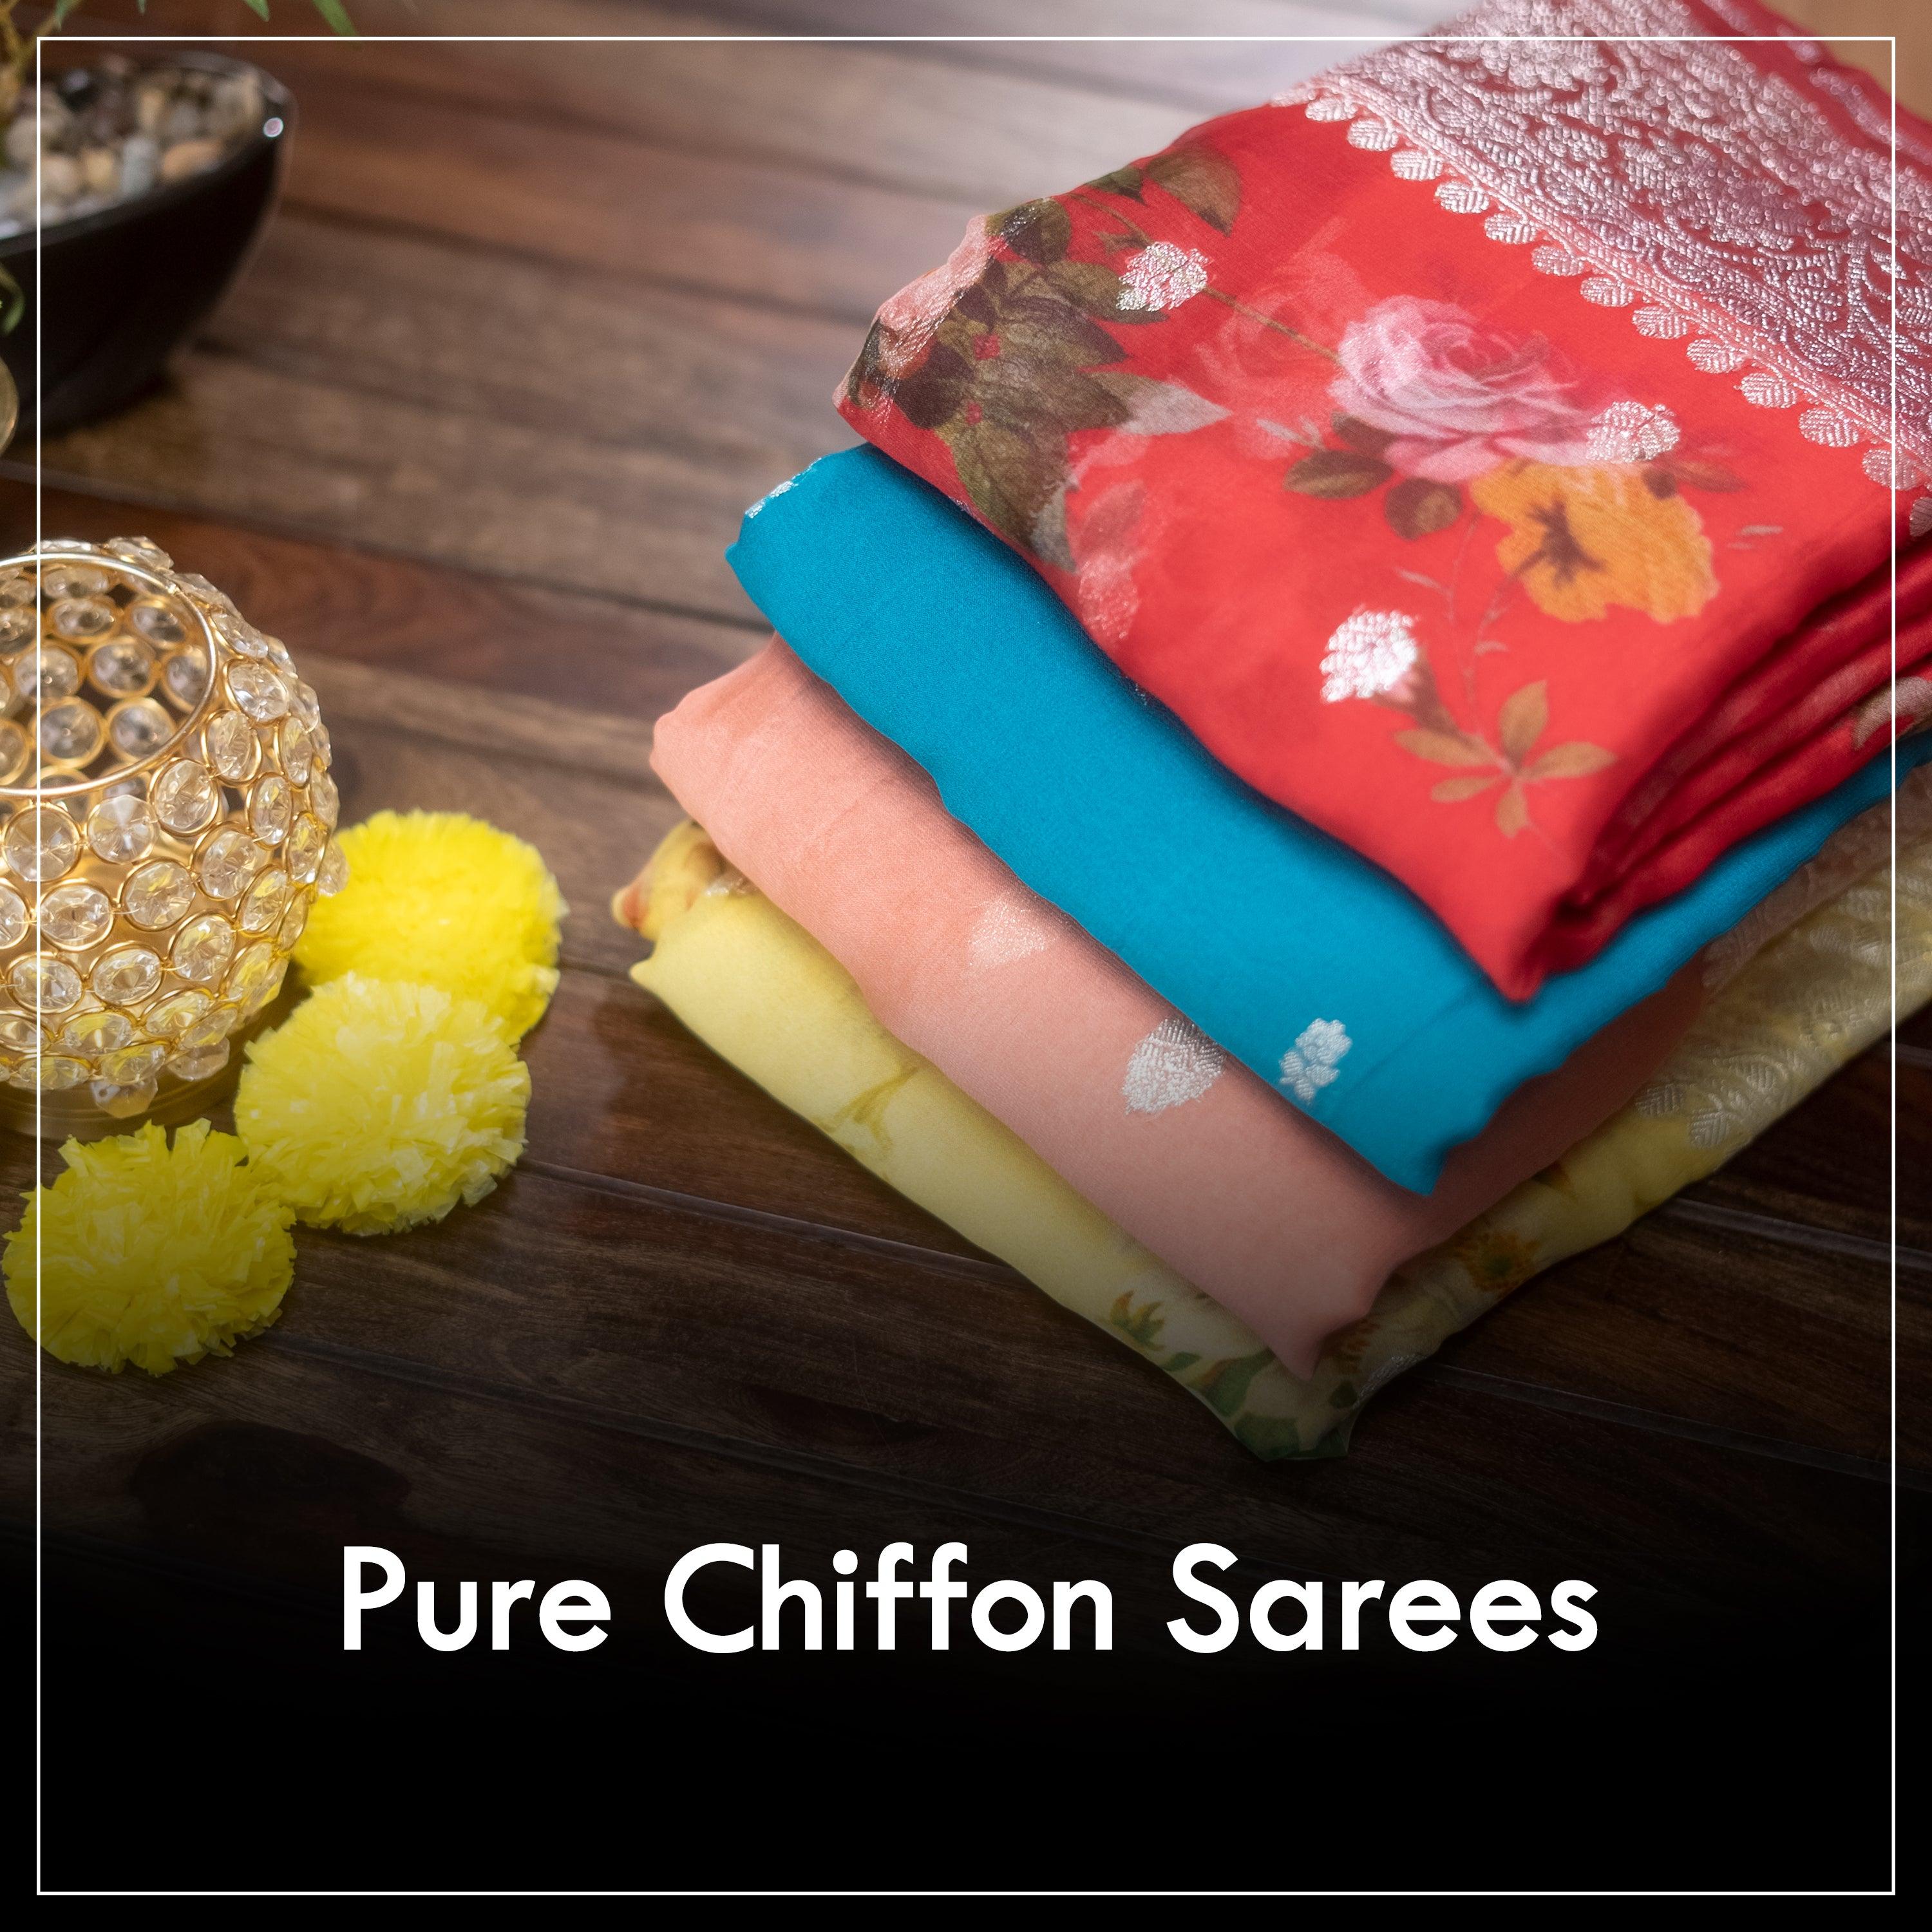 Pure Chiffon Casual Wear Satin Ciffon saree with sequen Blouse